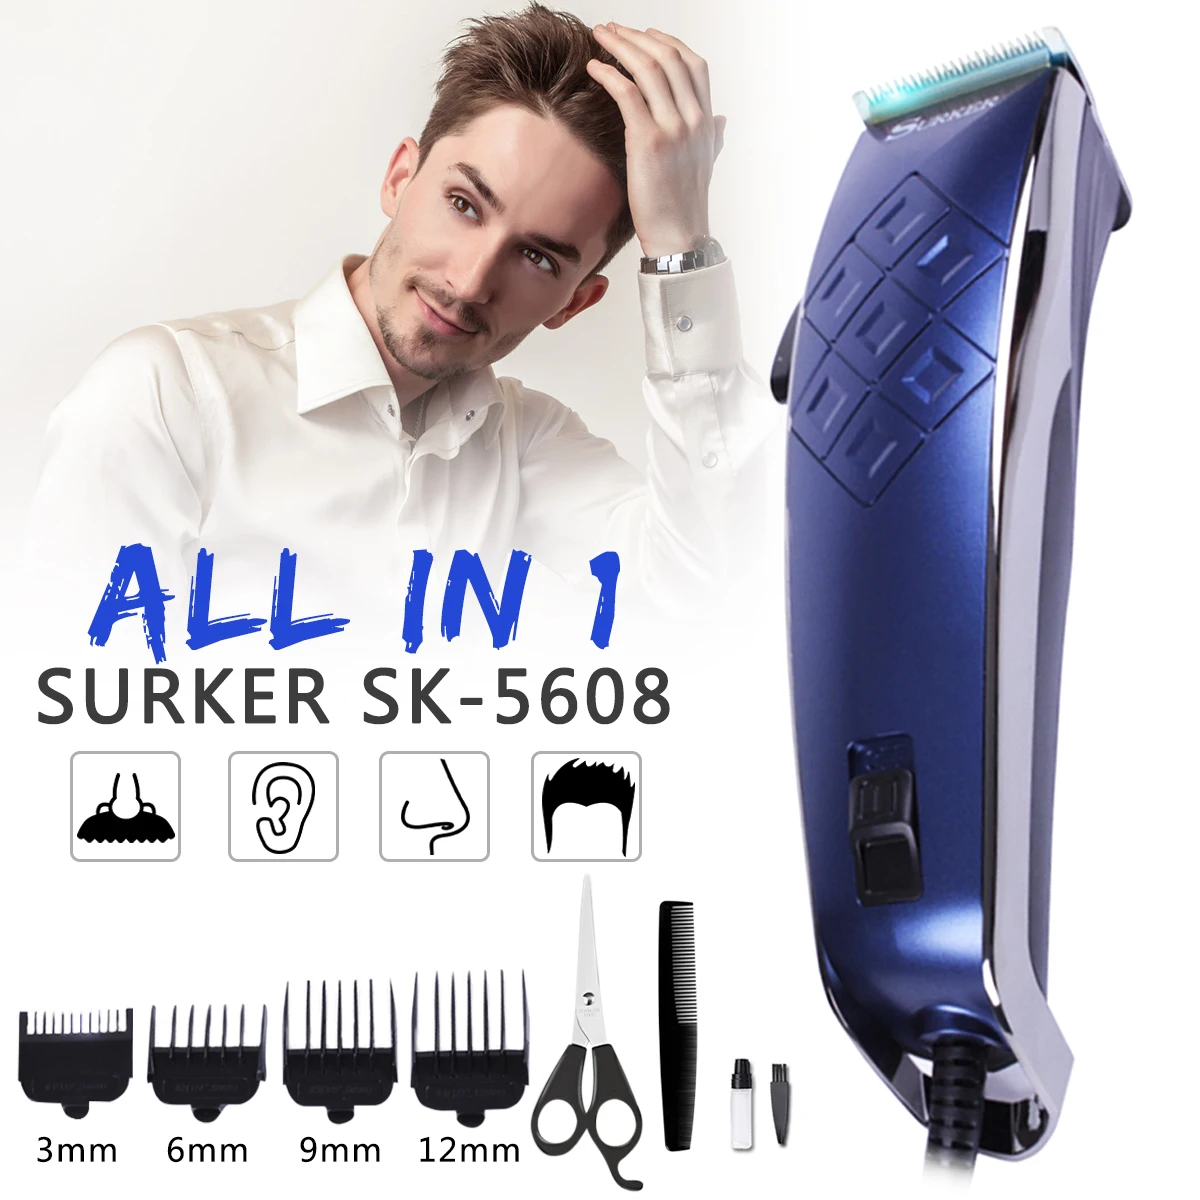 SURKER Регулируемая перезаряжаемая машинка для стрижки волос, электрический проводной триммер для волос, профессиональная семейная домашняя Парикмахерская Машинка для стрижки волос, SK-5608